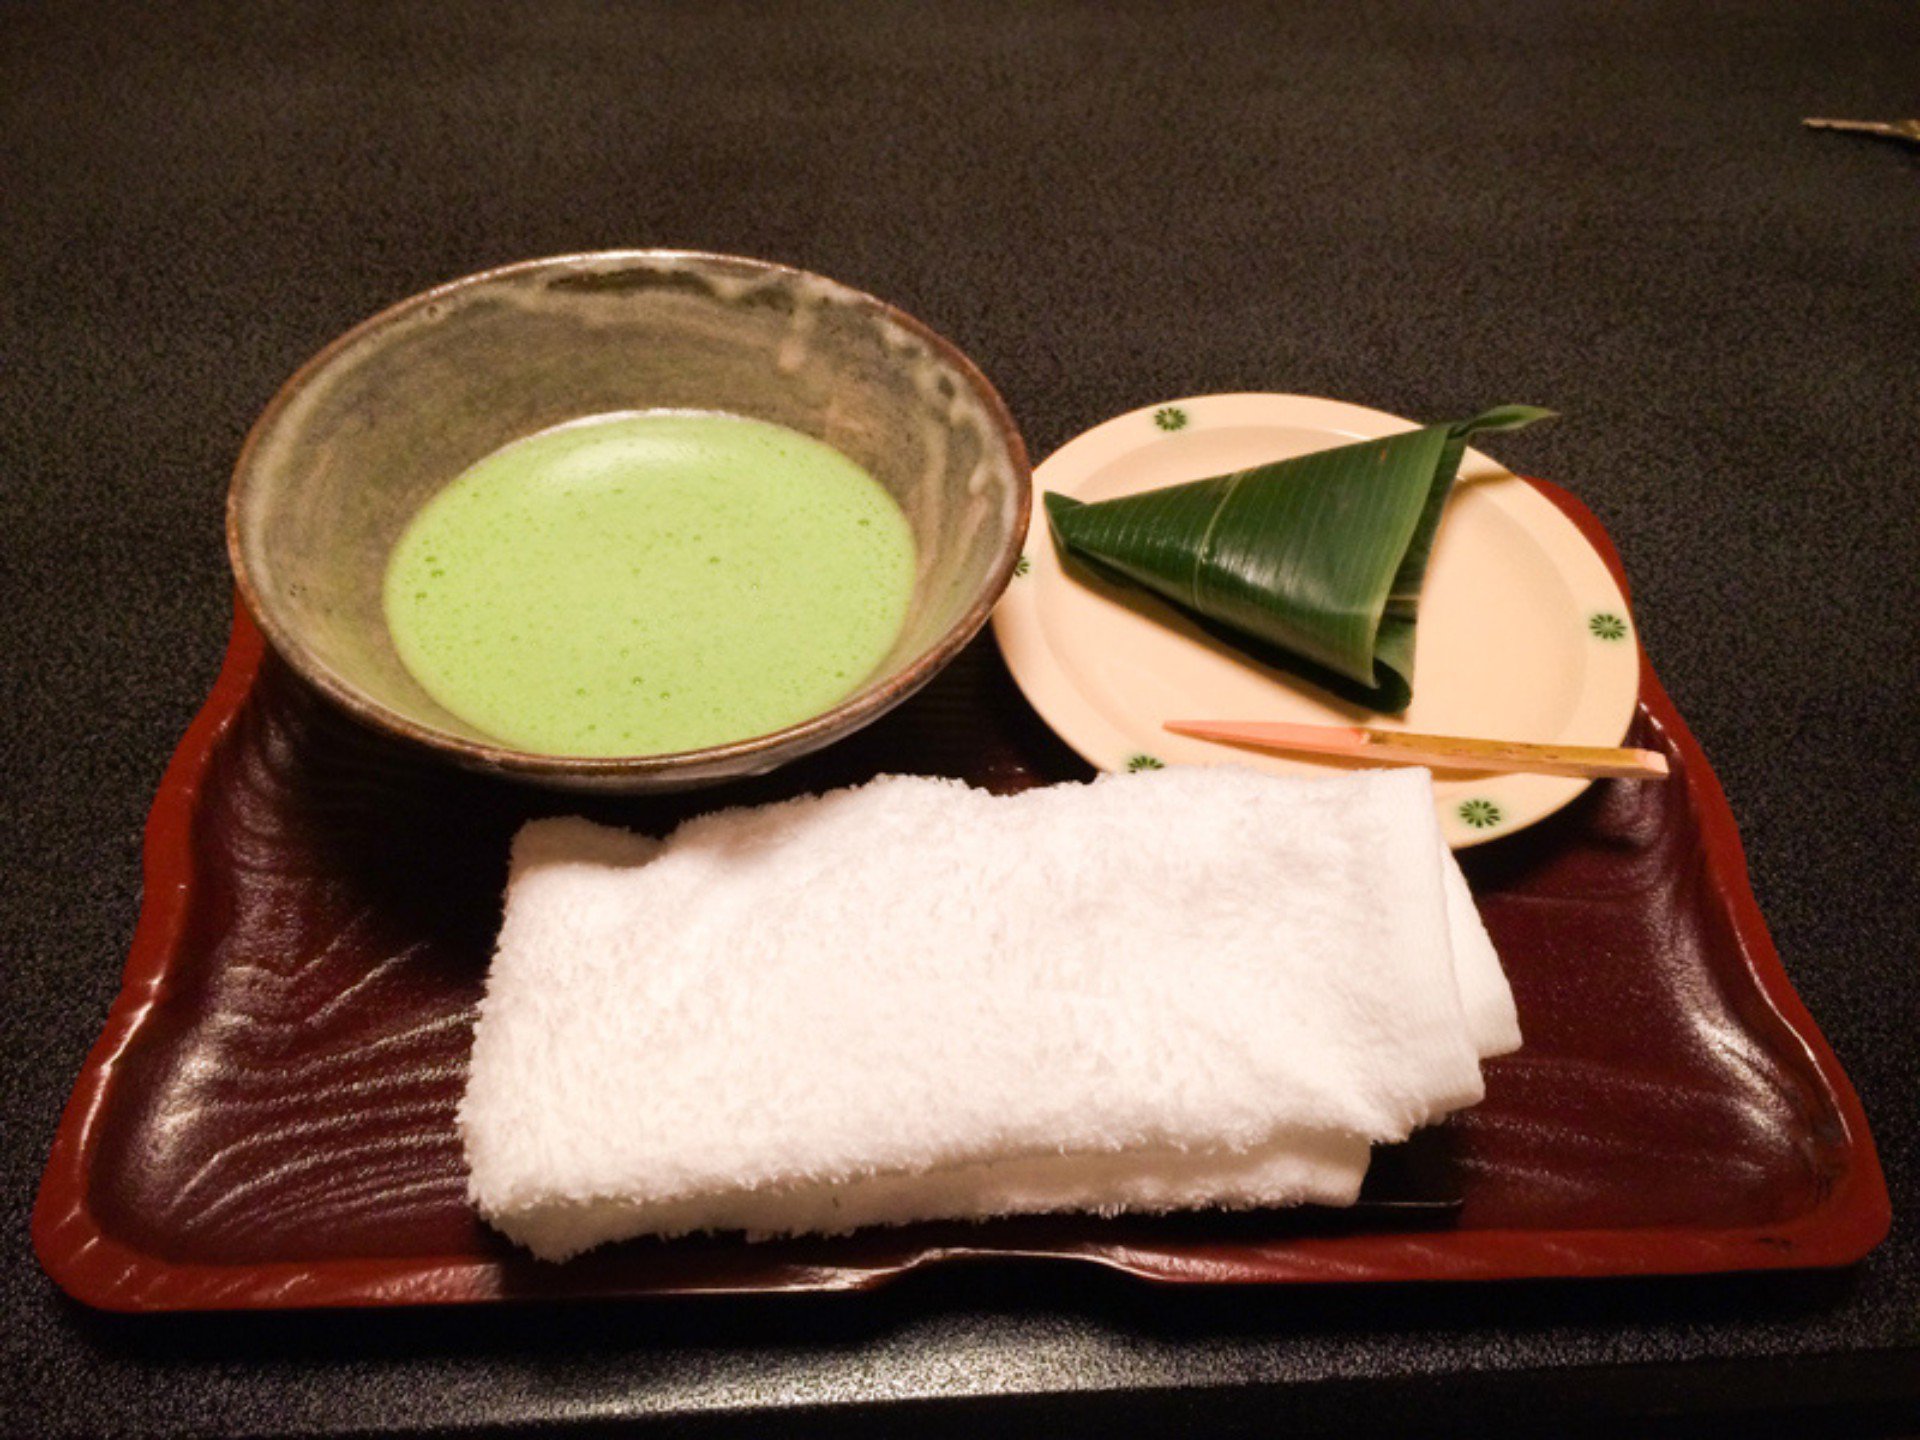 La toalla de mano humeda u Oshibori se considera una cordialidad hacía el comensal.